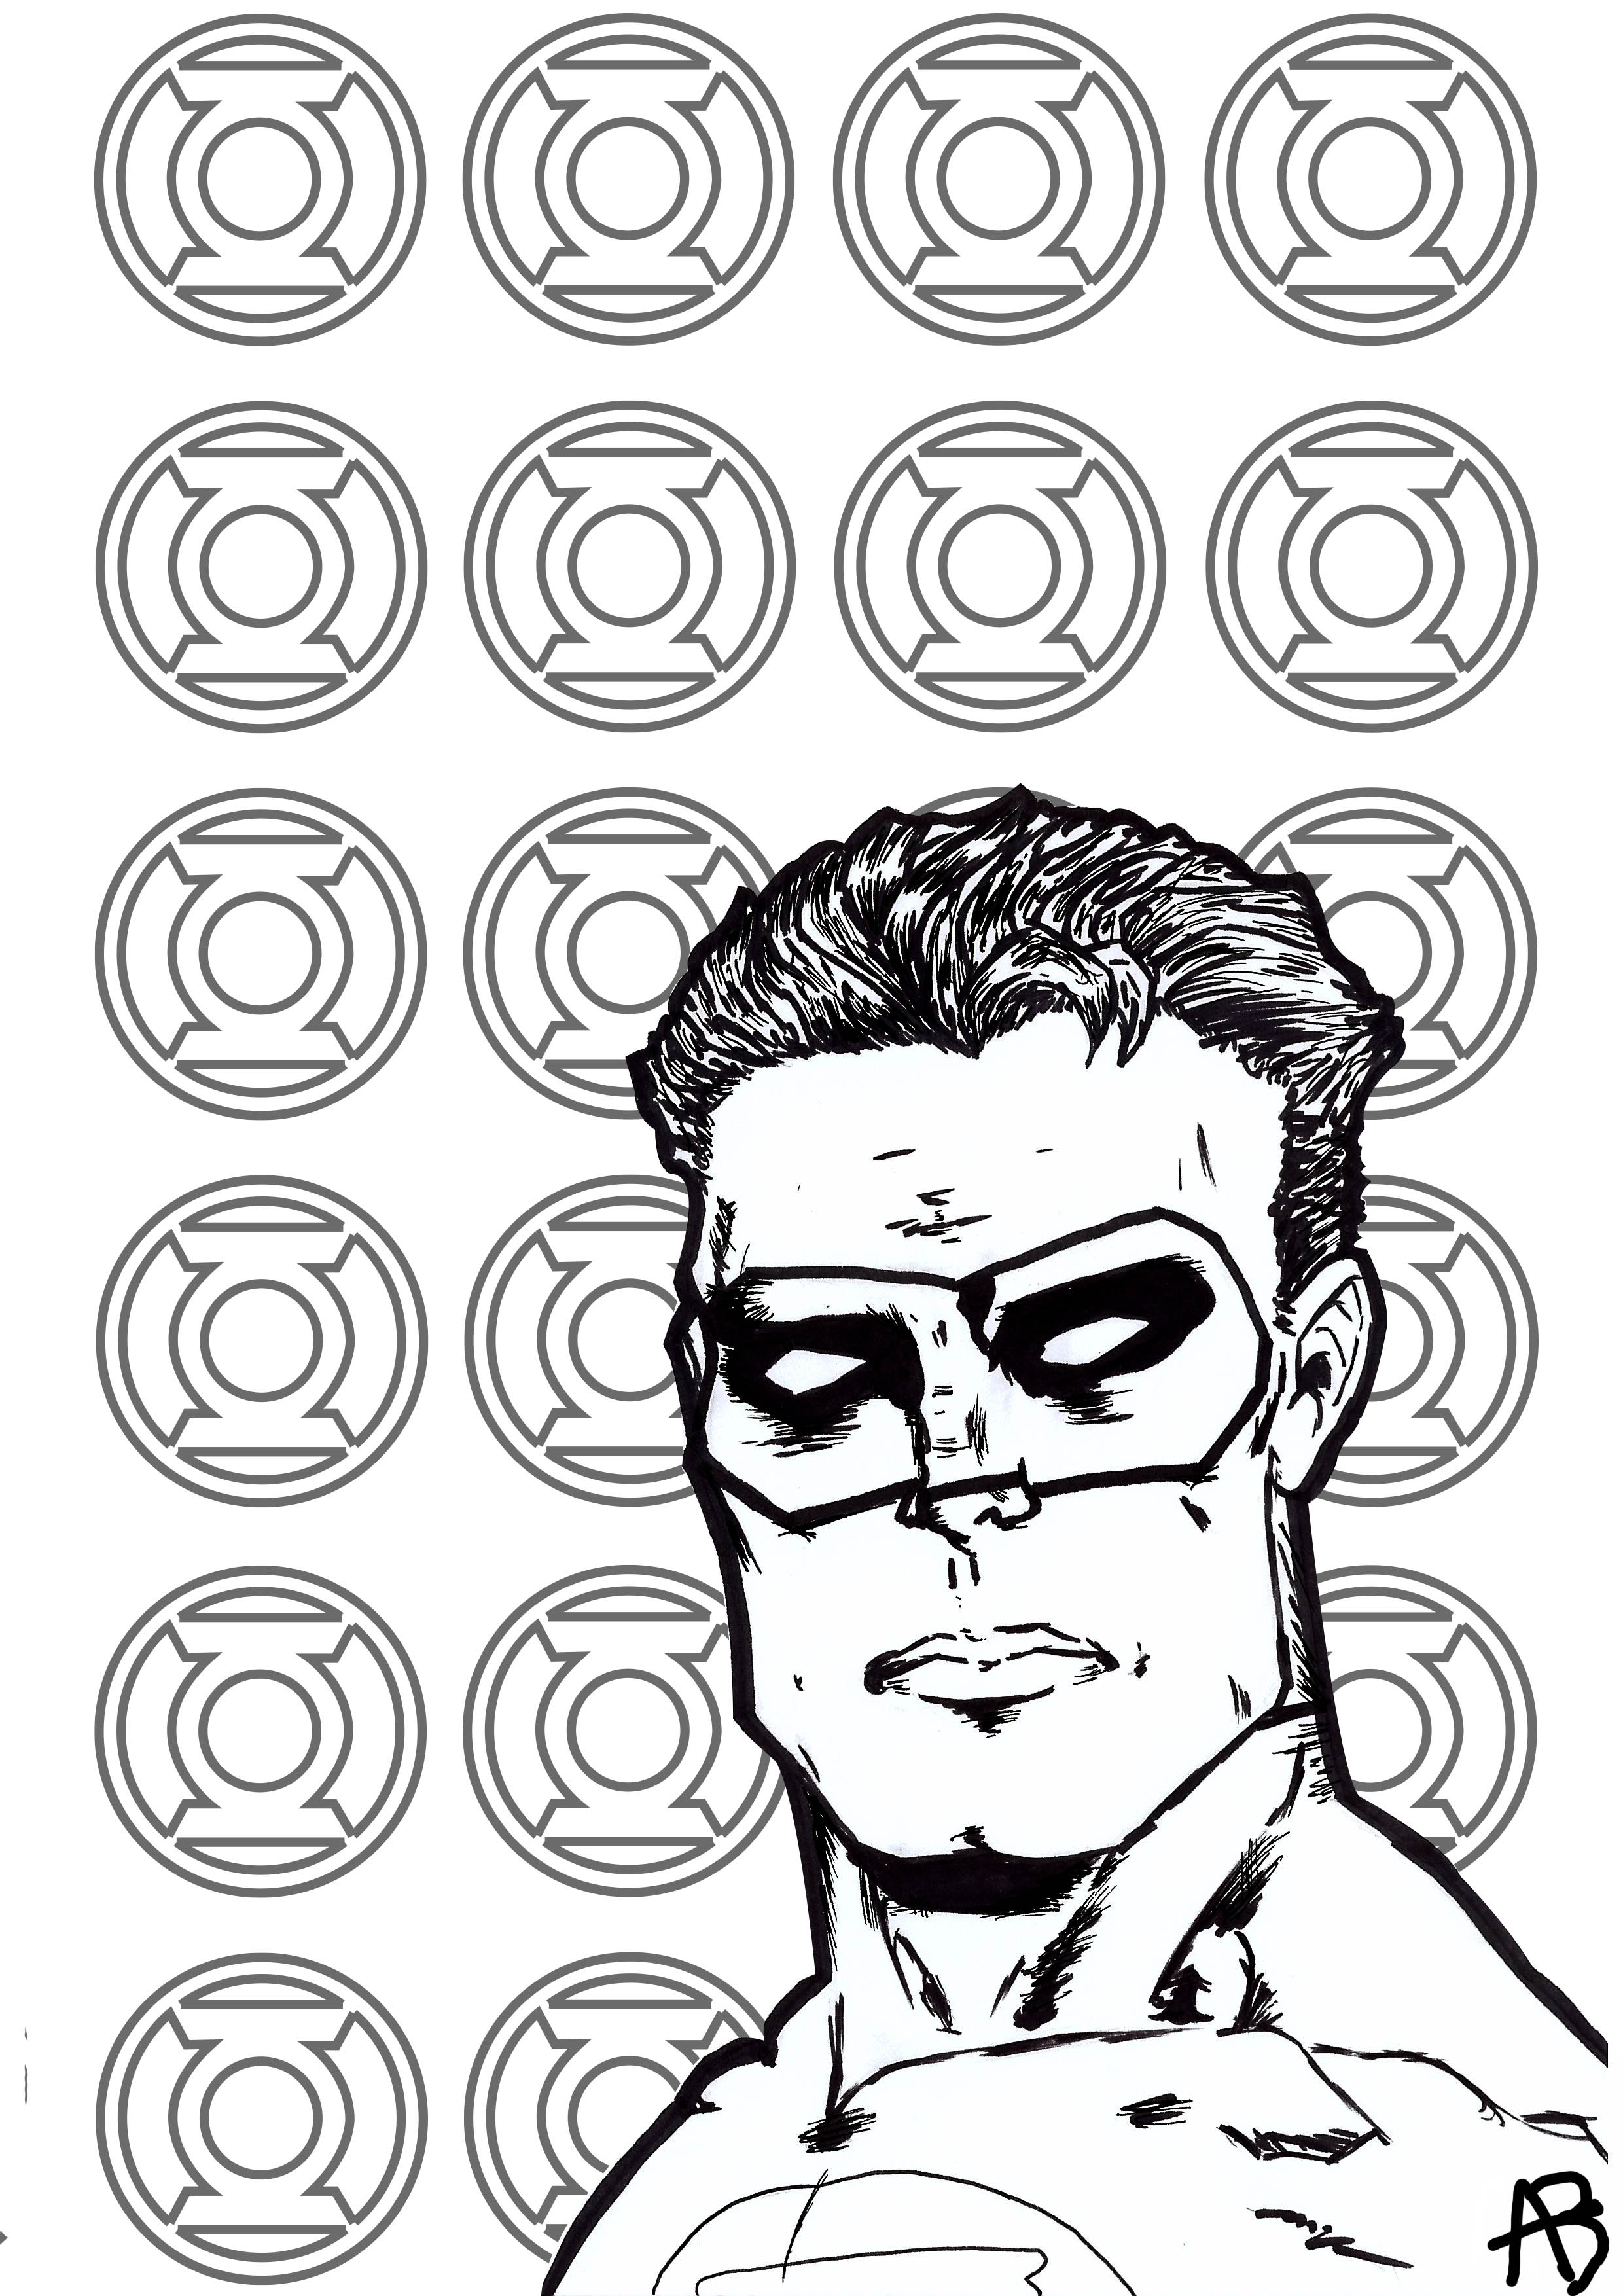 Malvorlage inspiriert von Green Lantern (DC Comics Figur), Künstler : Allan